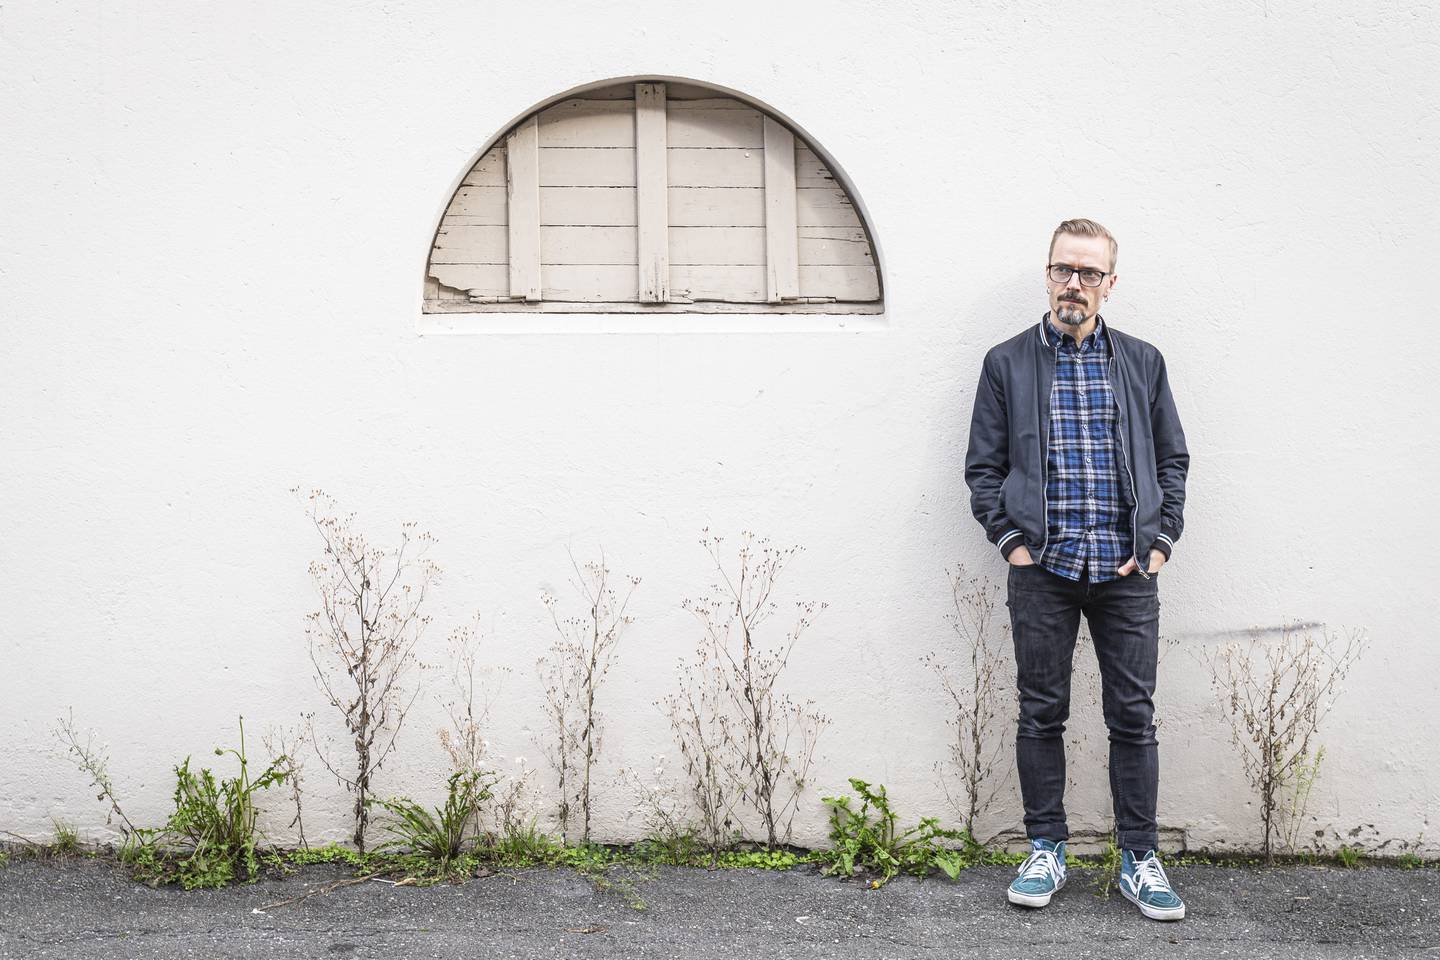 Musiker Ole Børud intervjuet og fotografert 12.09.19, i forbindelse med hans nye album "Outside The Limit".